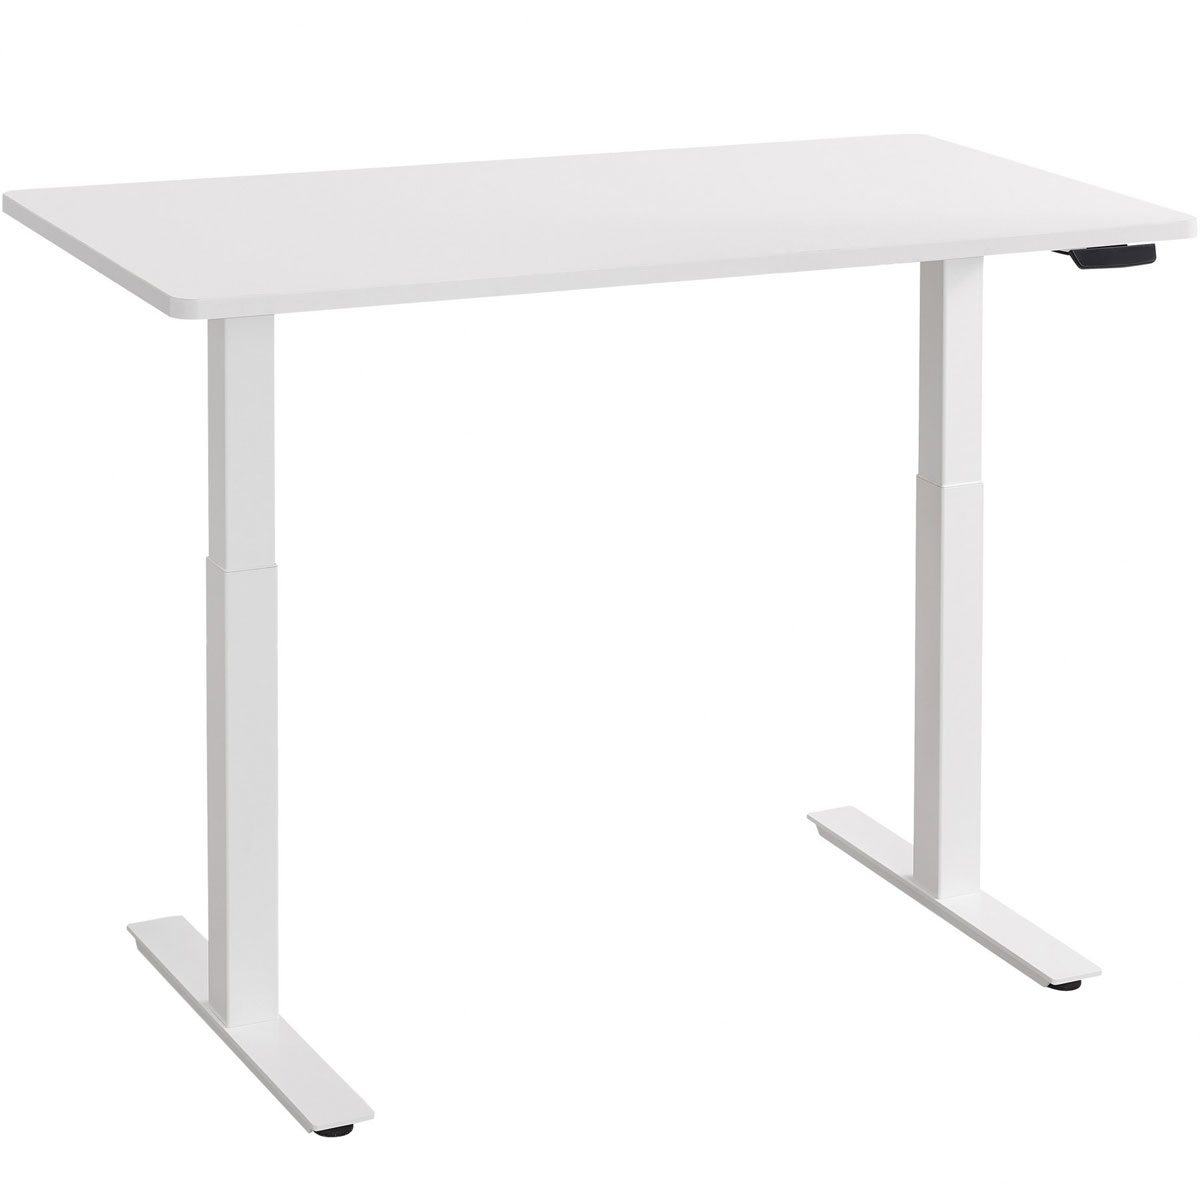 Elektrisch höhenverstellbarer Schreibtisch 160x80 cm, weiß, 68,5-116,5 cm Höhe